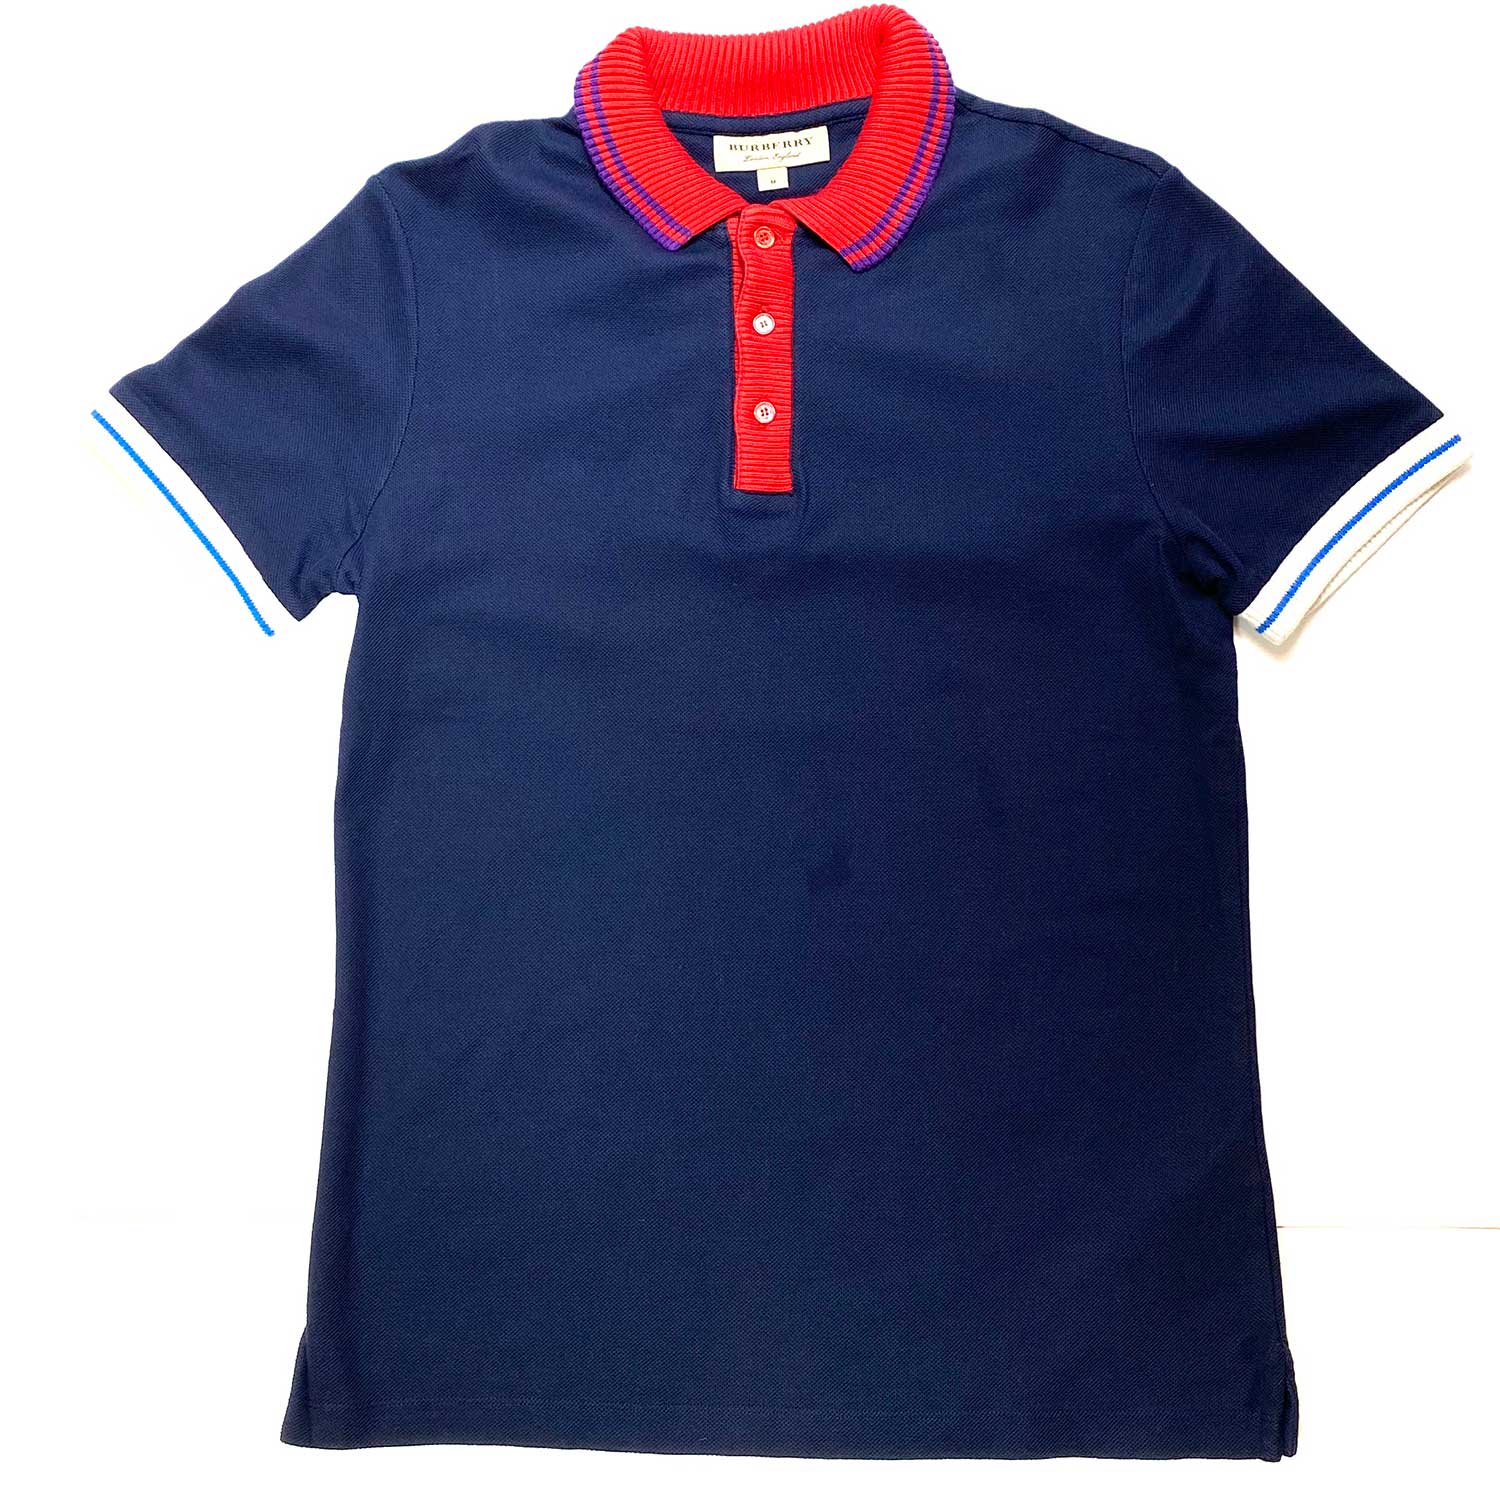 Camisa Polo Burberry Azul e Vermelha